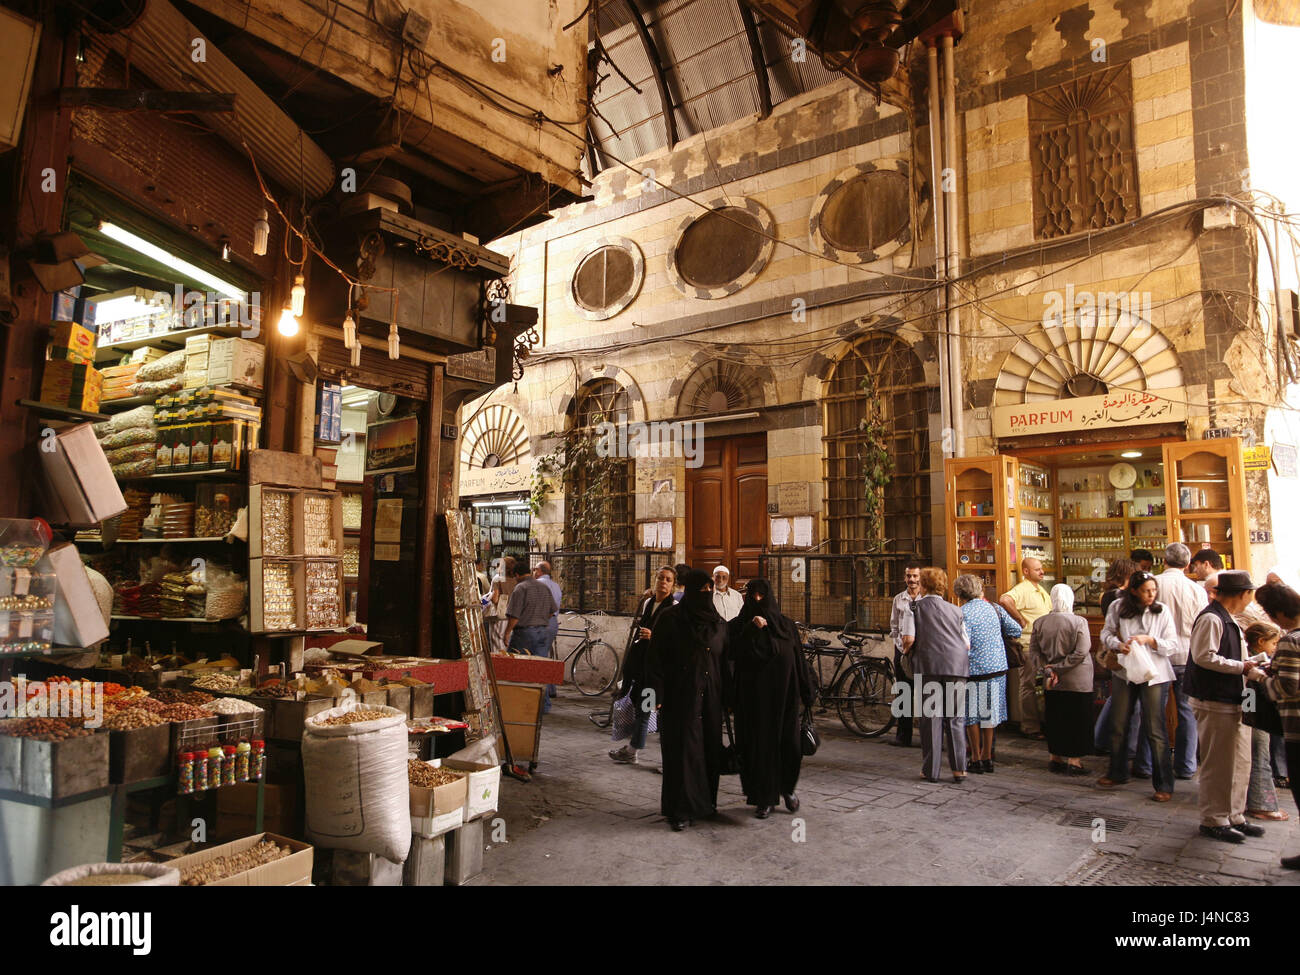 Старый город базар. Старый город Дамаск Сирия. Дамаск древний город города Сирии. Дамаск 7 век. Дамаск старый город базар 1990 год.